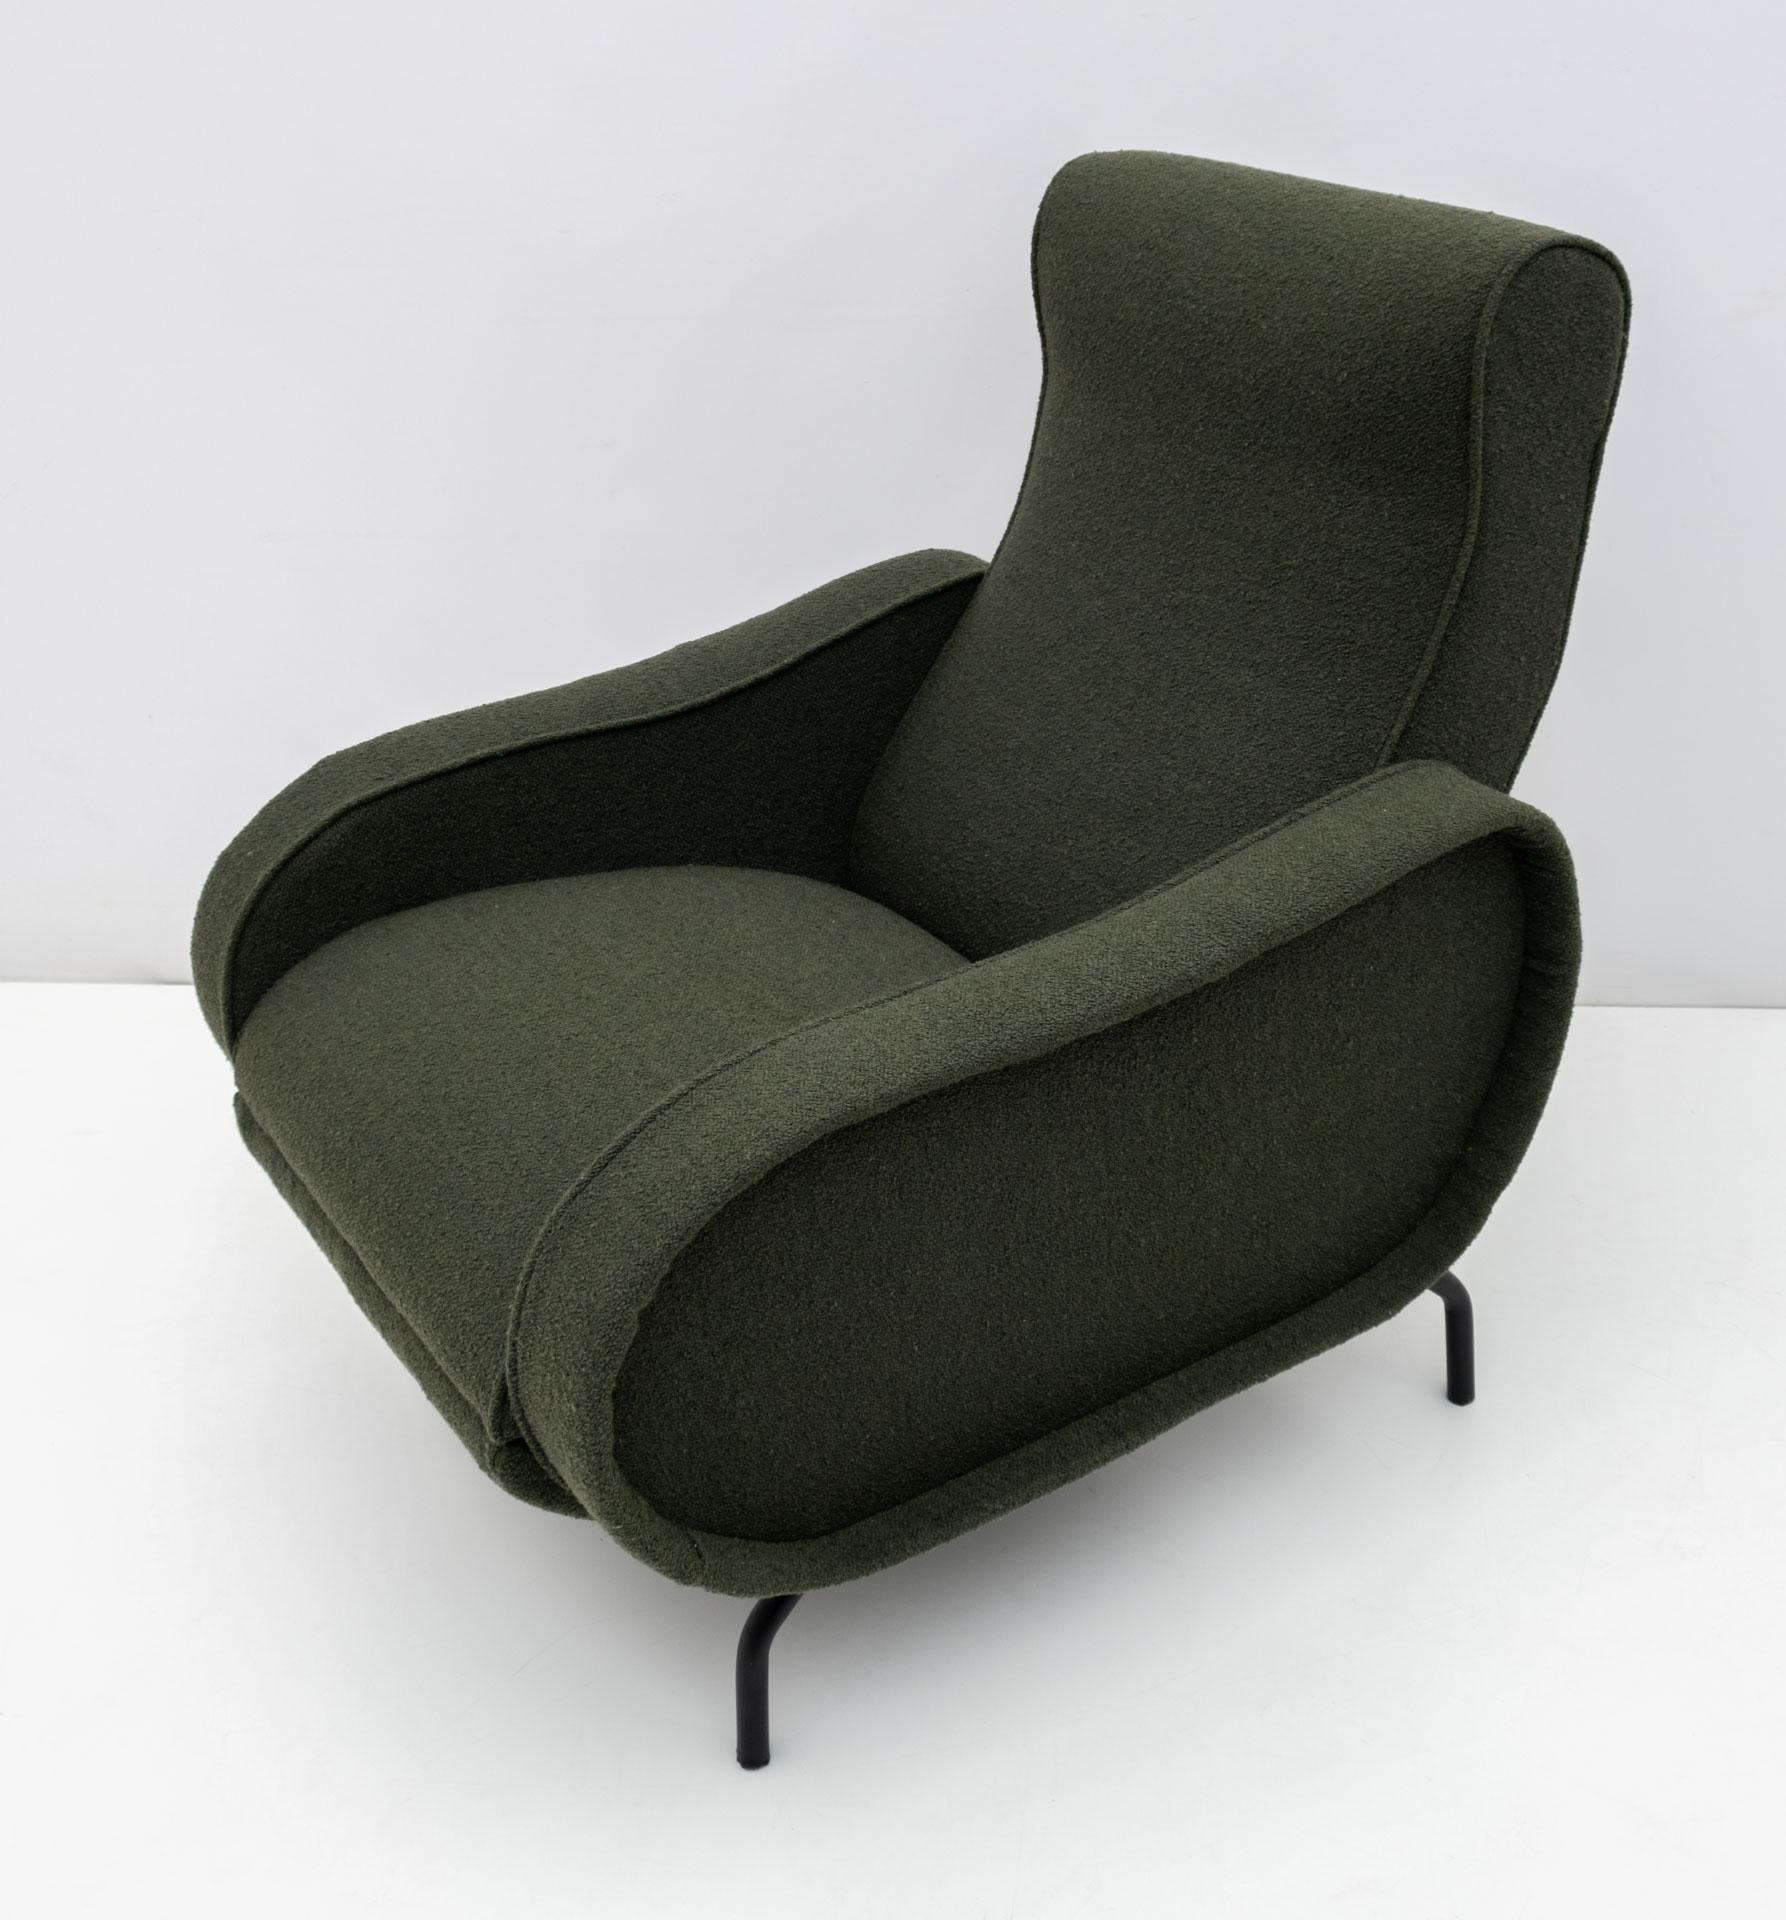 Der von Marco Zanuso in den 1950er Jahren entworfene Liegesessel wurde restauriert und mit englischem grünem Bouclè-Stoff gepolstert.

Der längliche Sessel misst 153 cm.